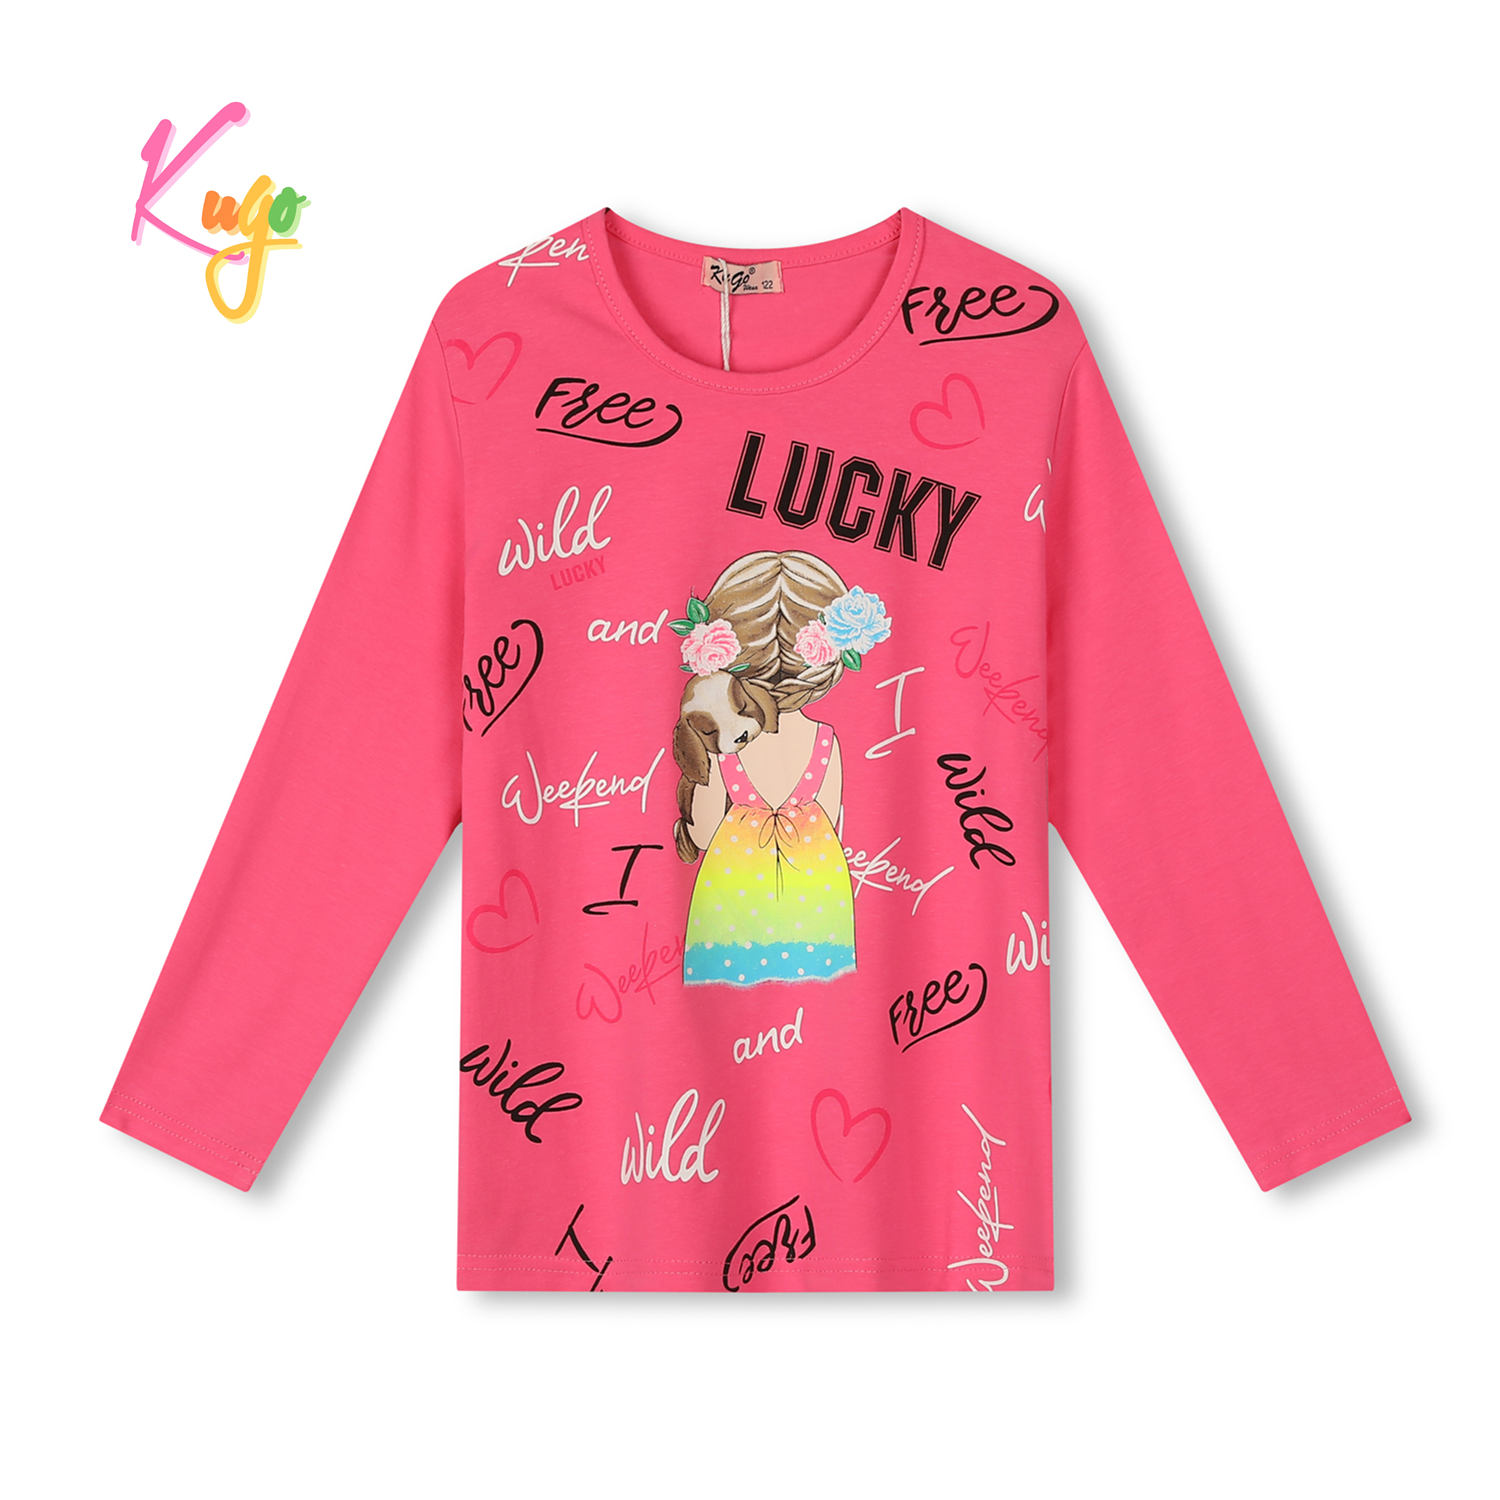 Dívčí tričko - KUGO KC9995, tmavě růžová Barva: Růžová, Velikost: 116